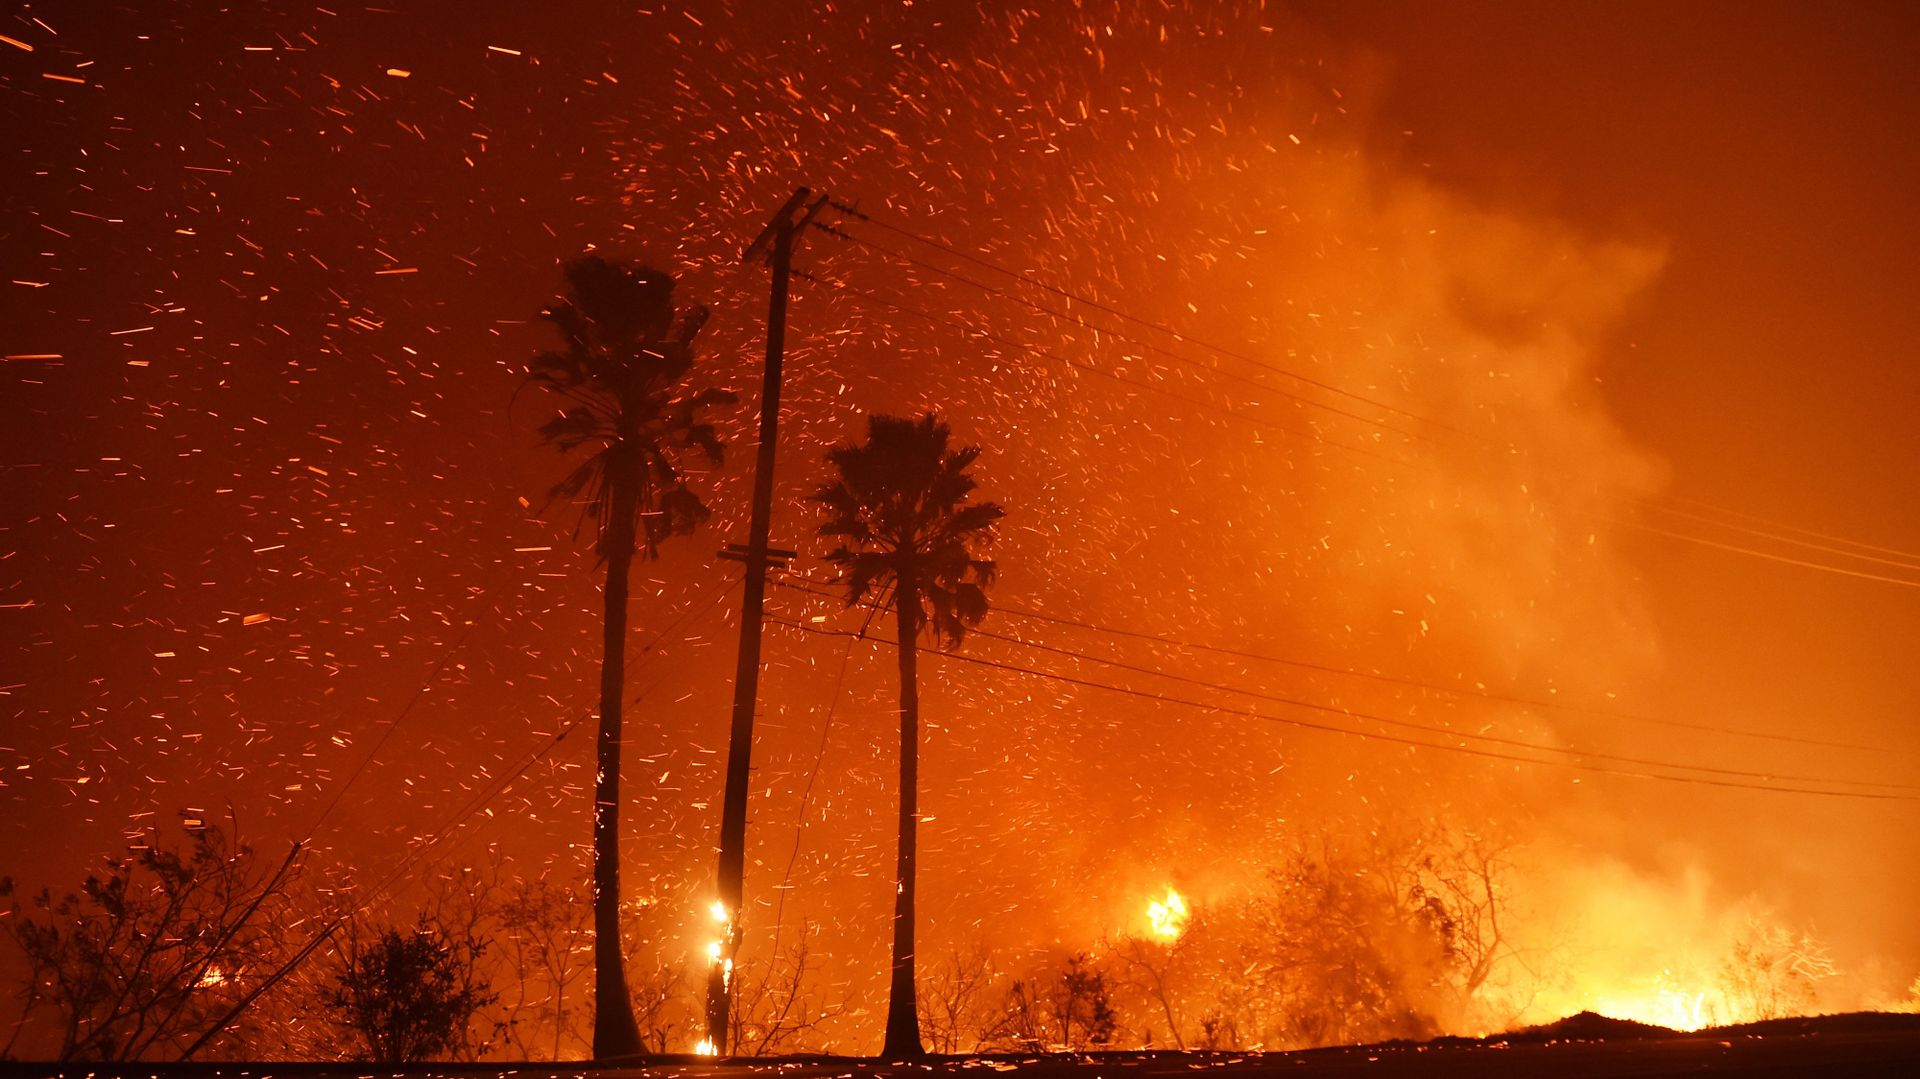 Le documentaire s'ouvre sur les images poignantes de deux incendies qui ont dévasté en 2018 Malibu et Paradise, deux villes californiennes aux réalités socio-économiques opposées, et tué 88 personnes.